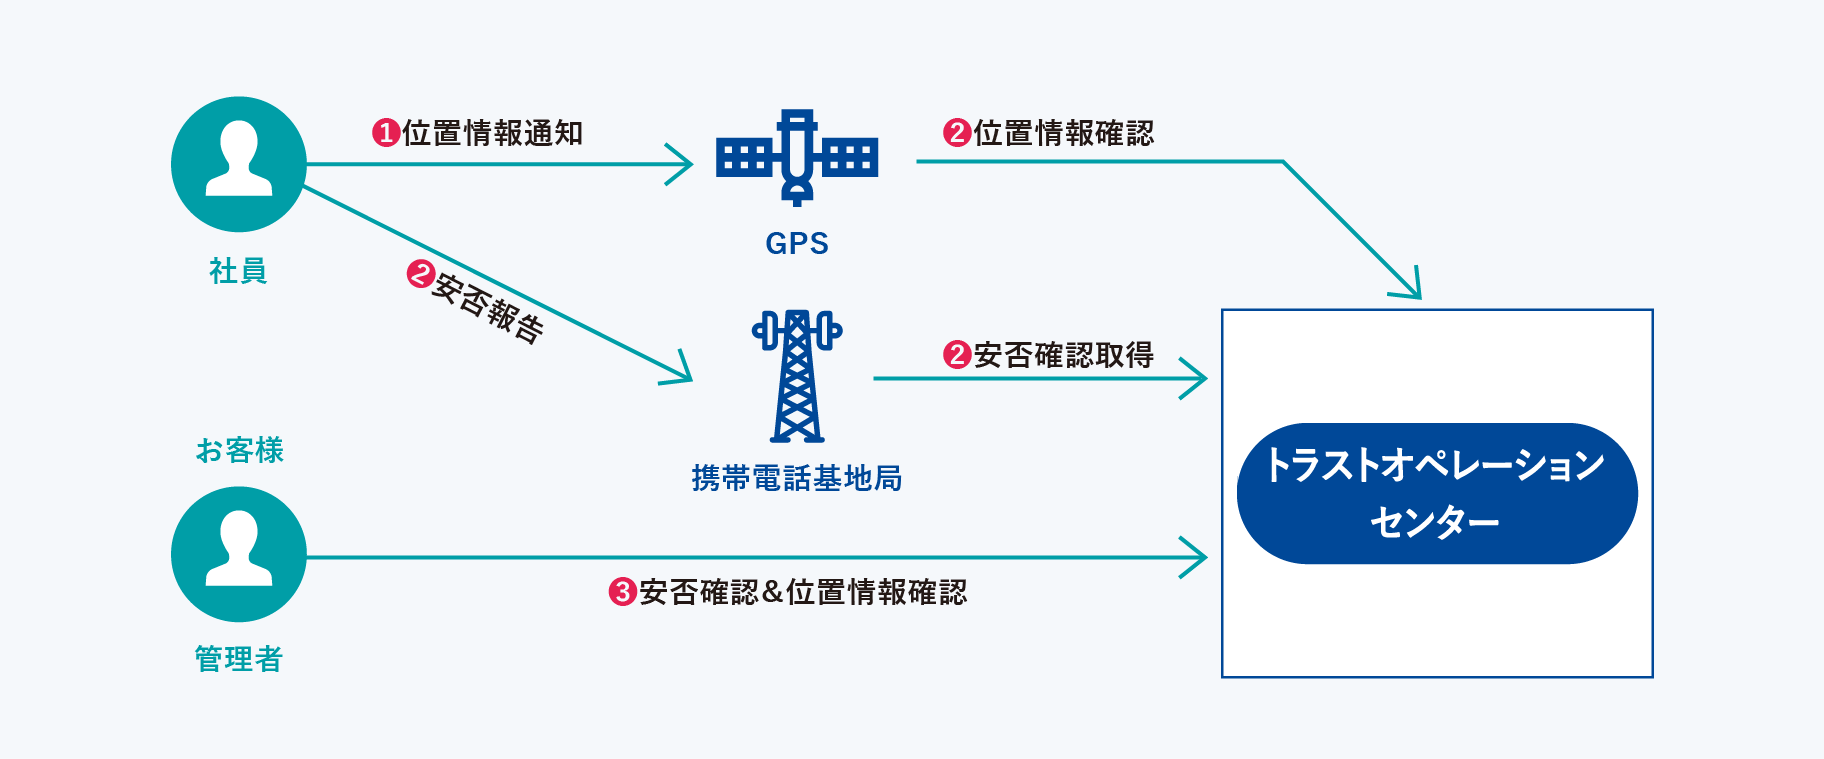 GPS機能付き携帯電話の例